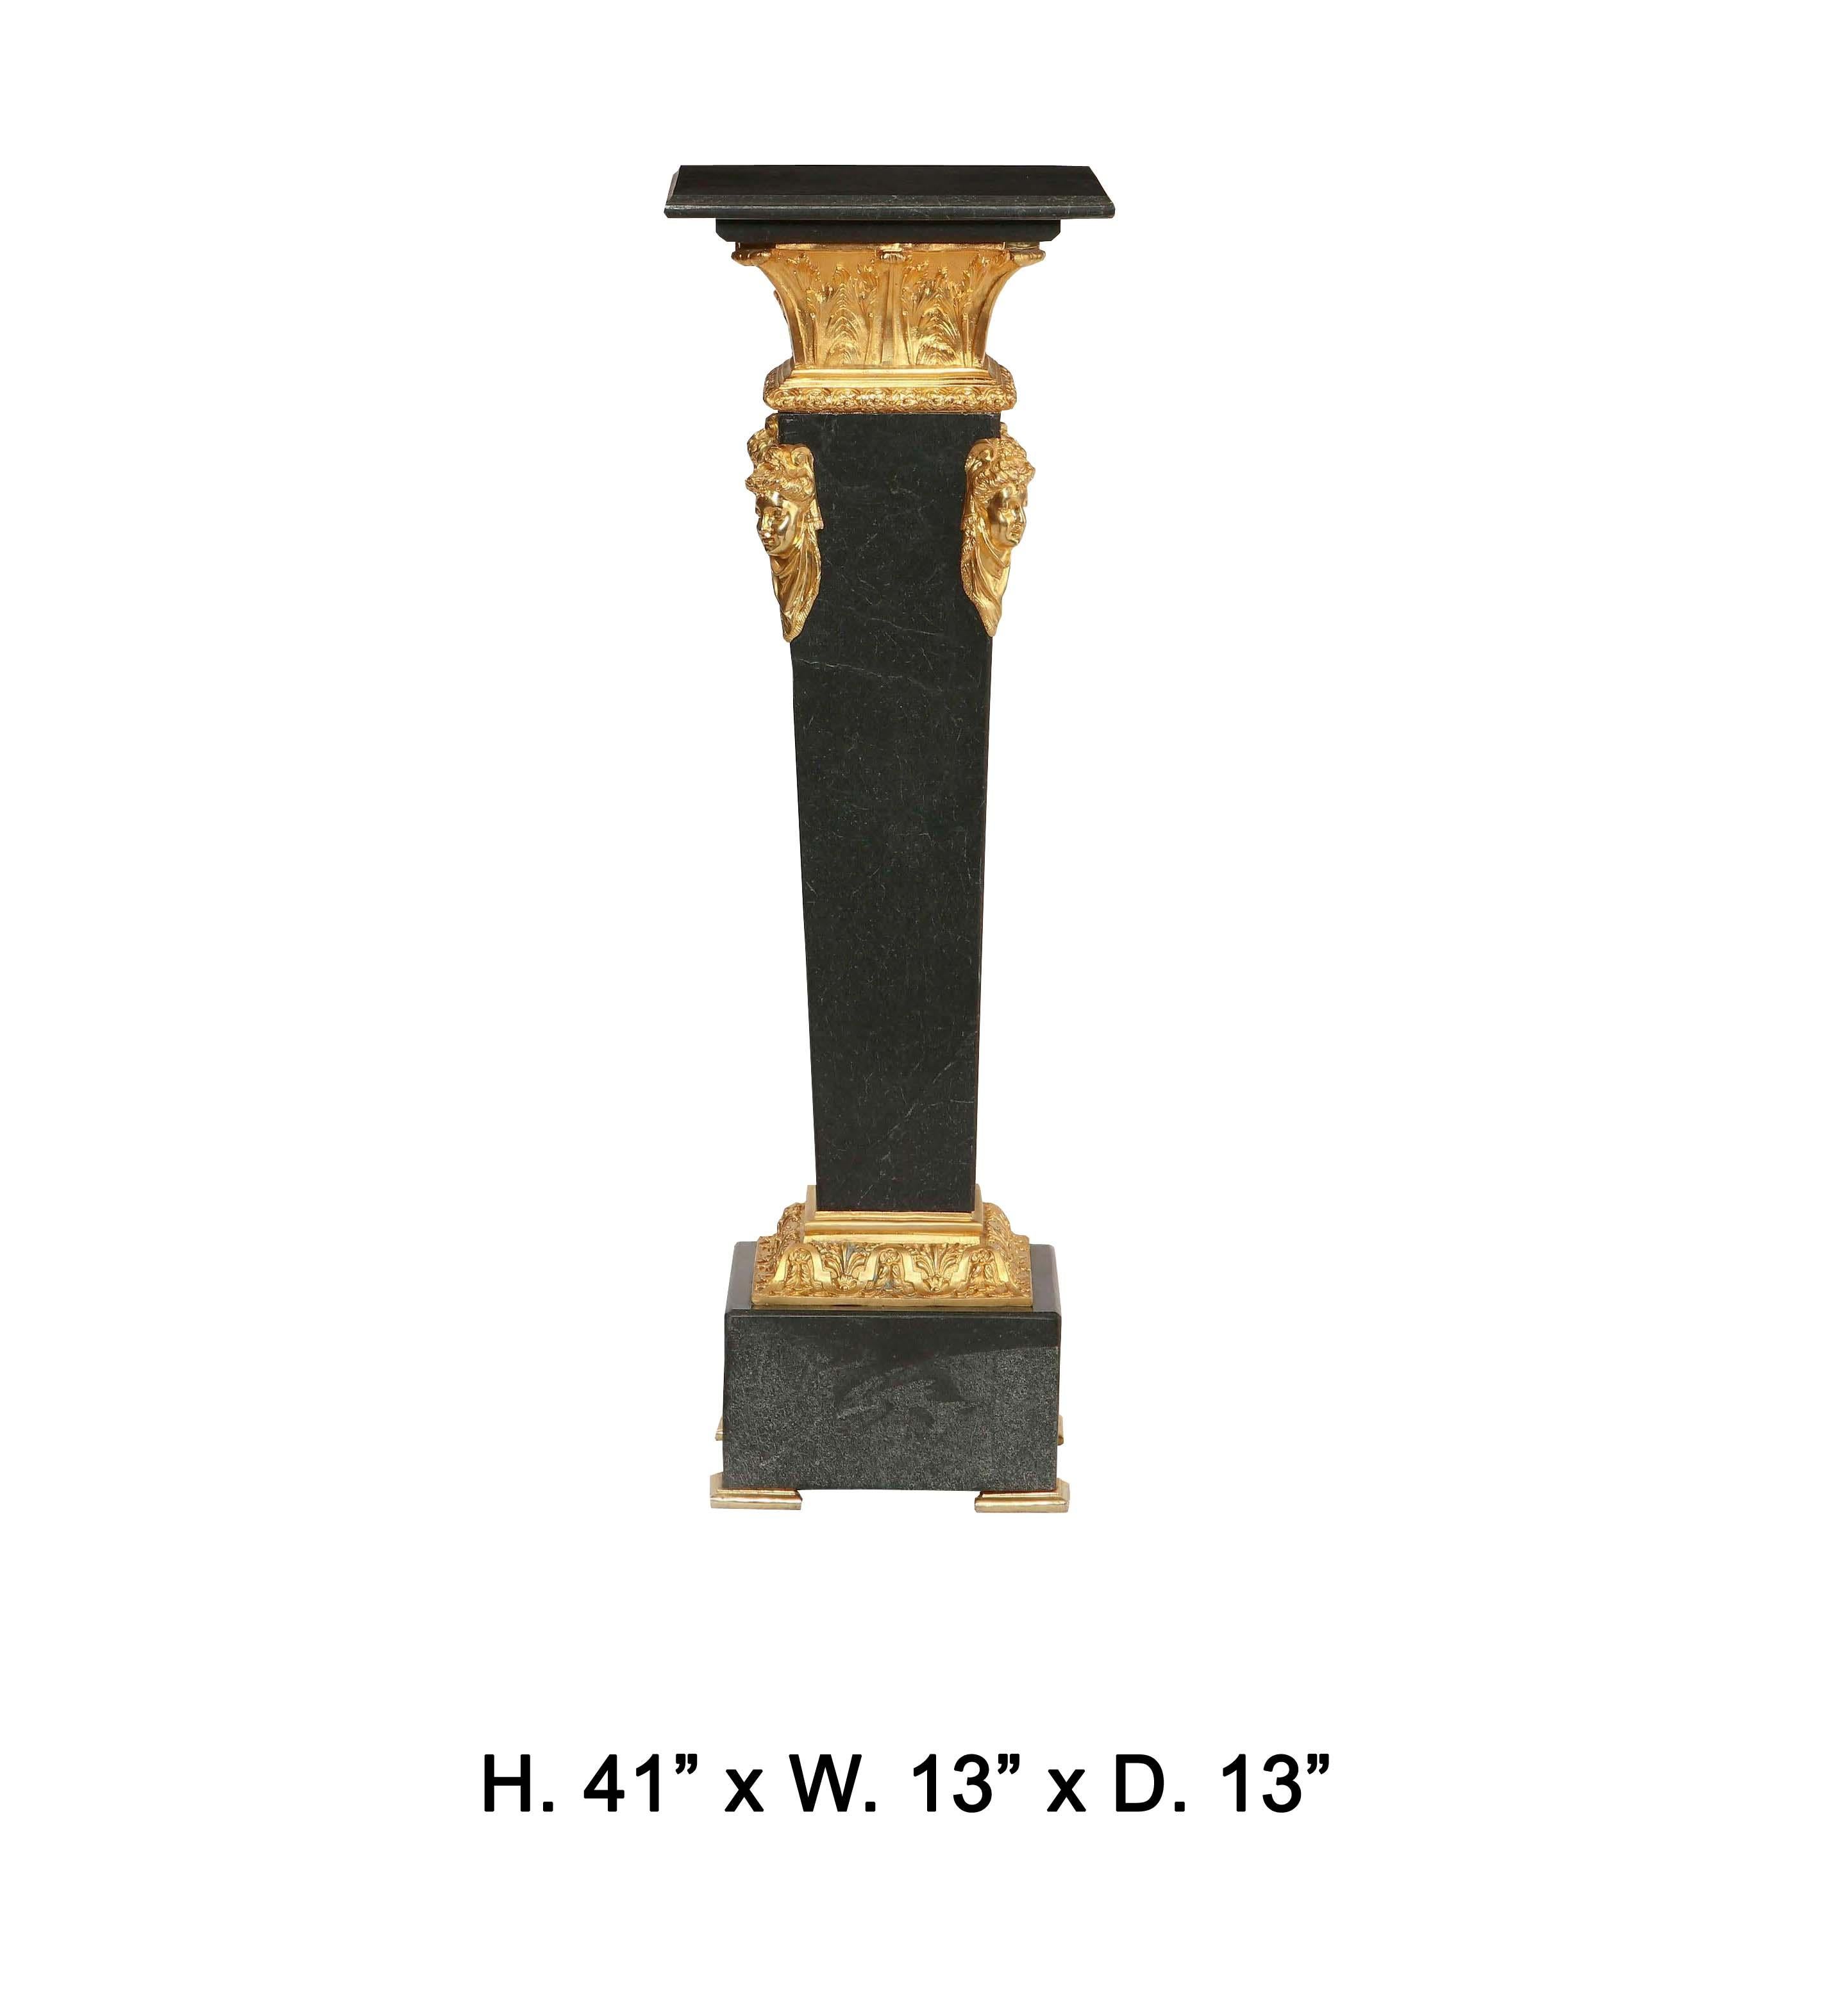 Neoklassischer Stil vergoldete Bronze montiert schwärzlichen Marmorsockel
Höhe 41 Zoll; Breite 13 Zoll; Tiefe 13 Zoll 
